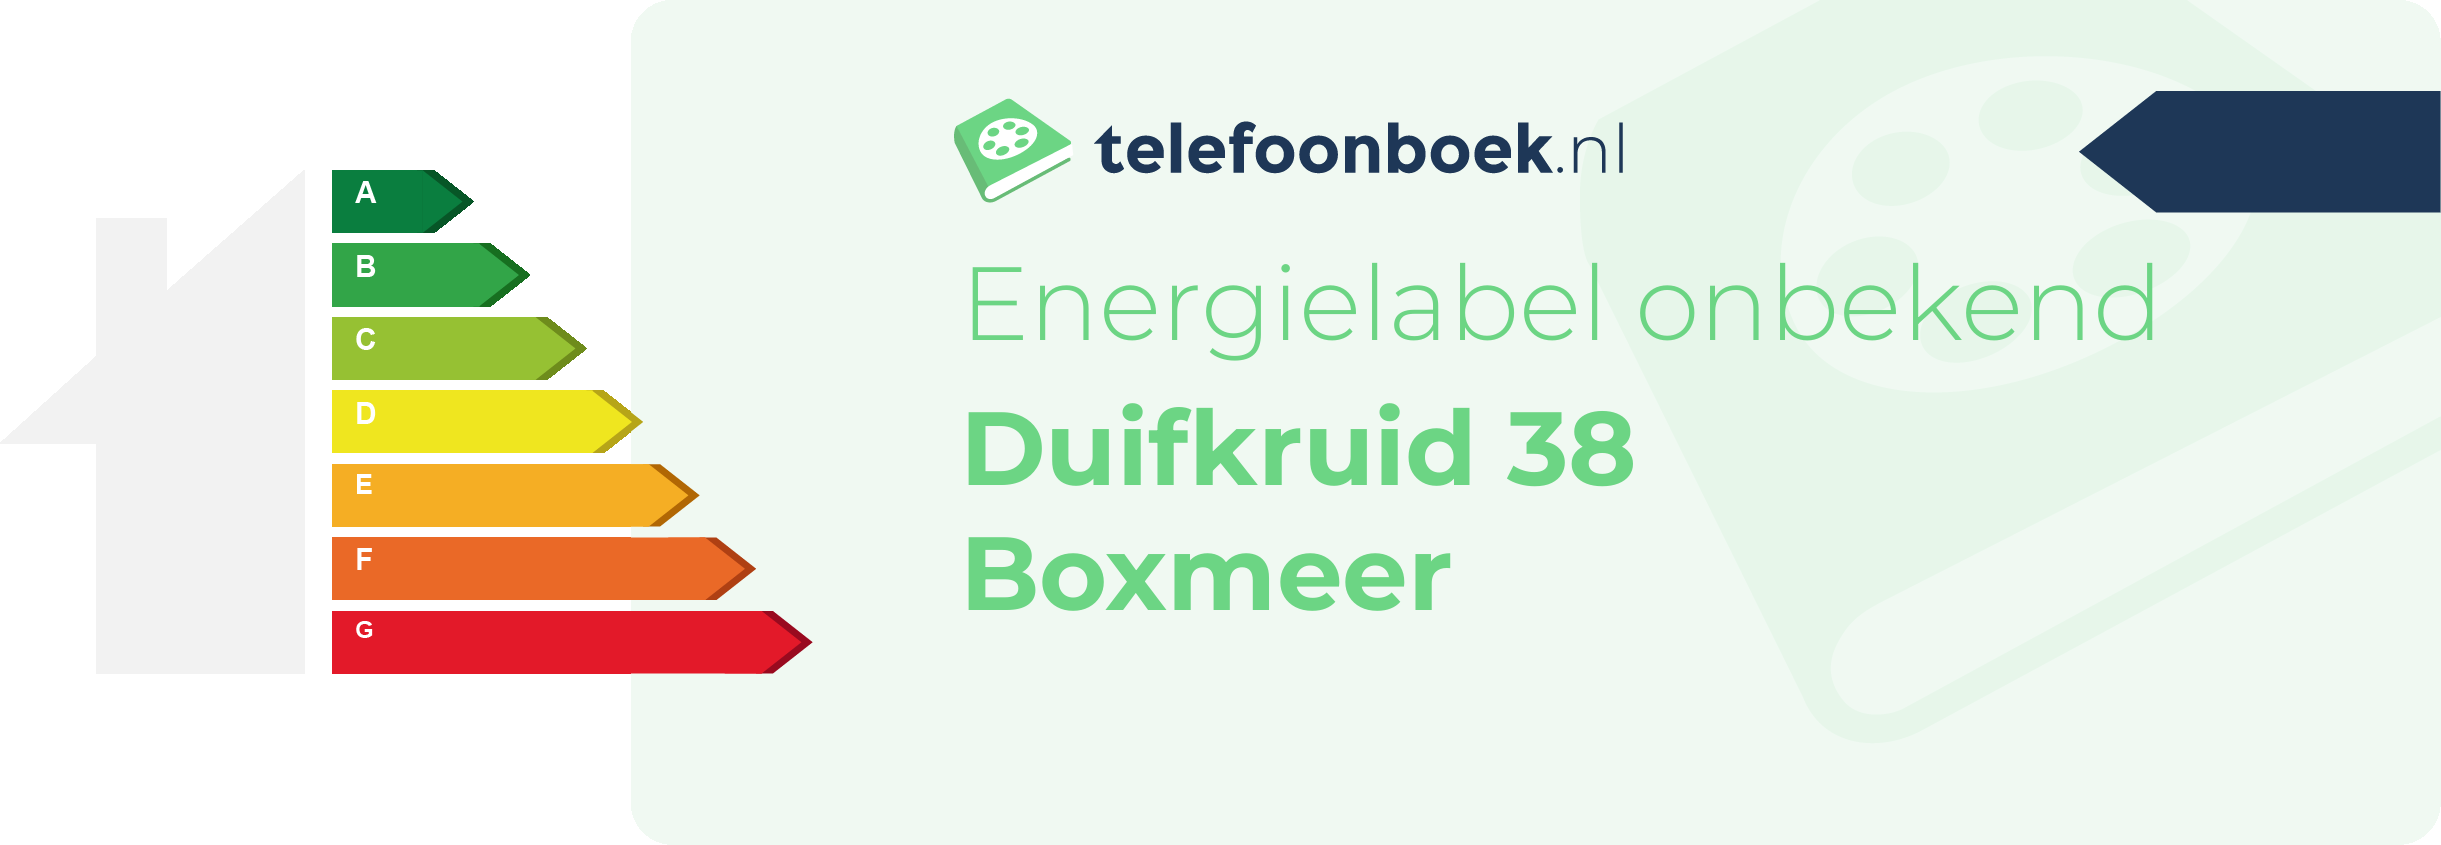 Energielabel Duifkruid 38 Boxmeer